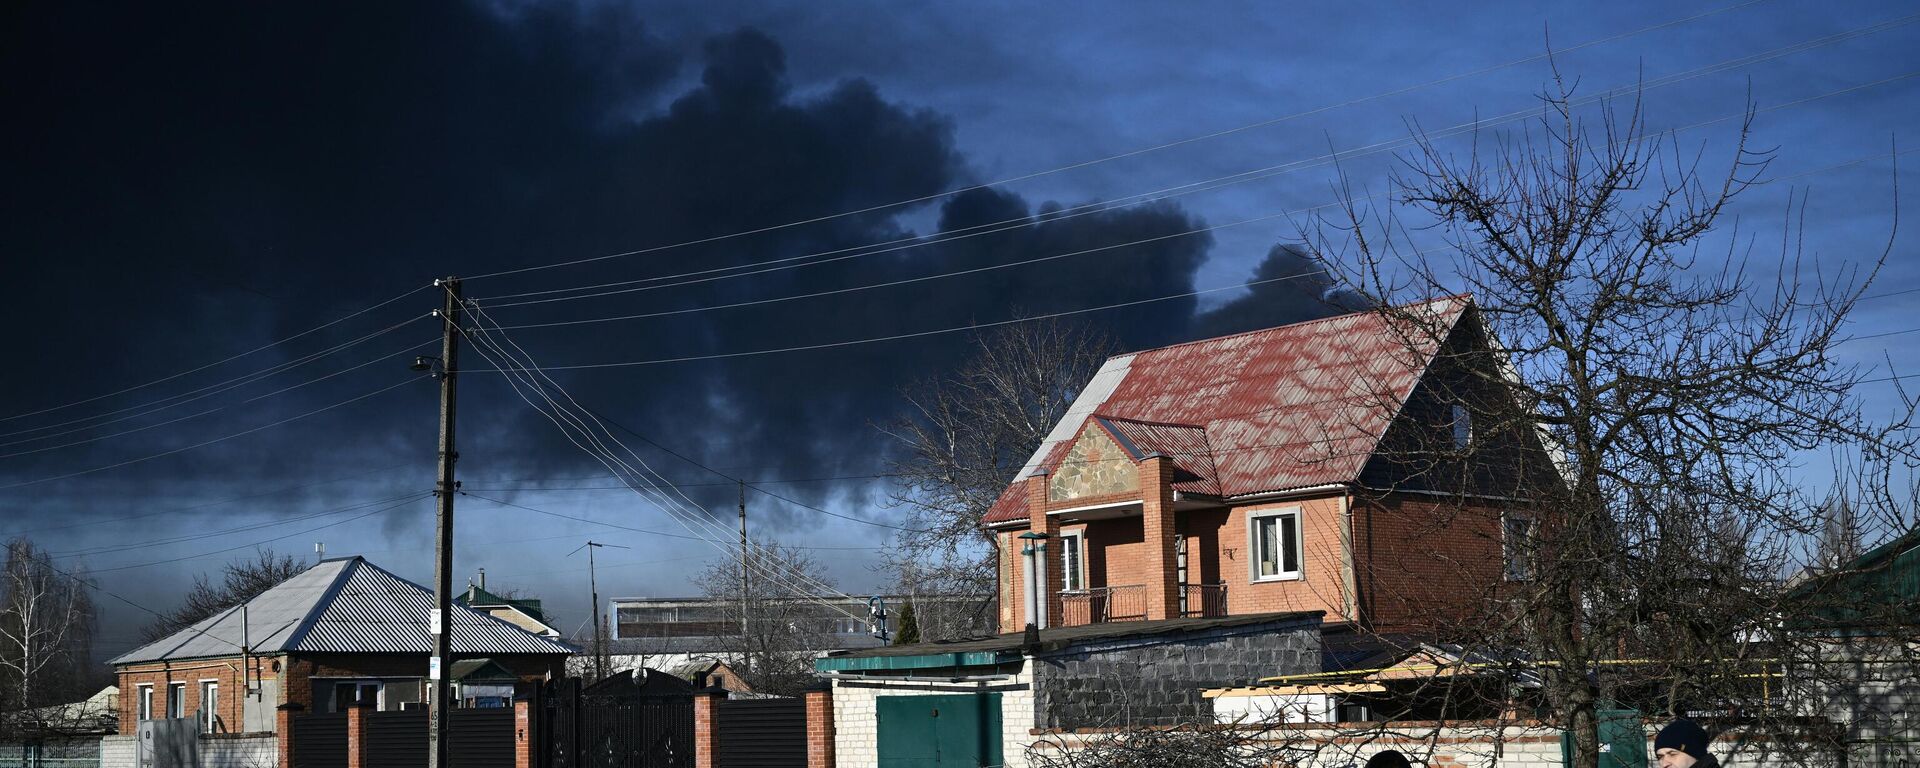 Черный дым над военным аэродромом в Чугуеве, Харьковская область, Украина, 24 февраля 2022 года - Sputnik Латвия, 1920, 24.02.2022